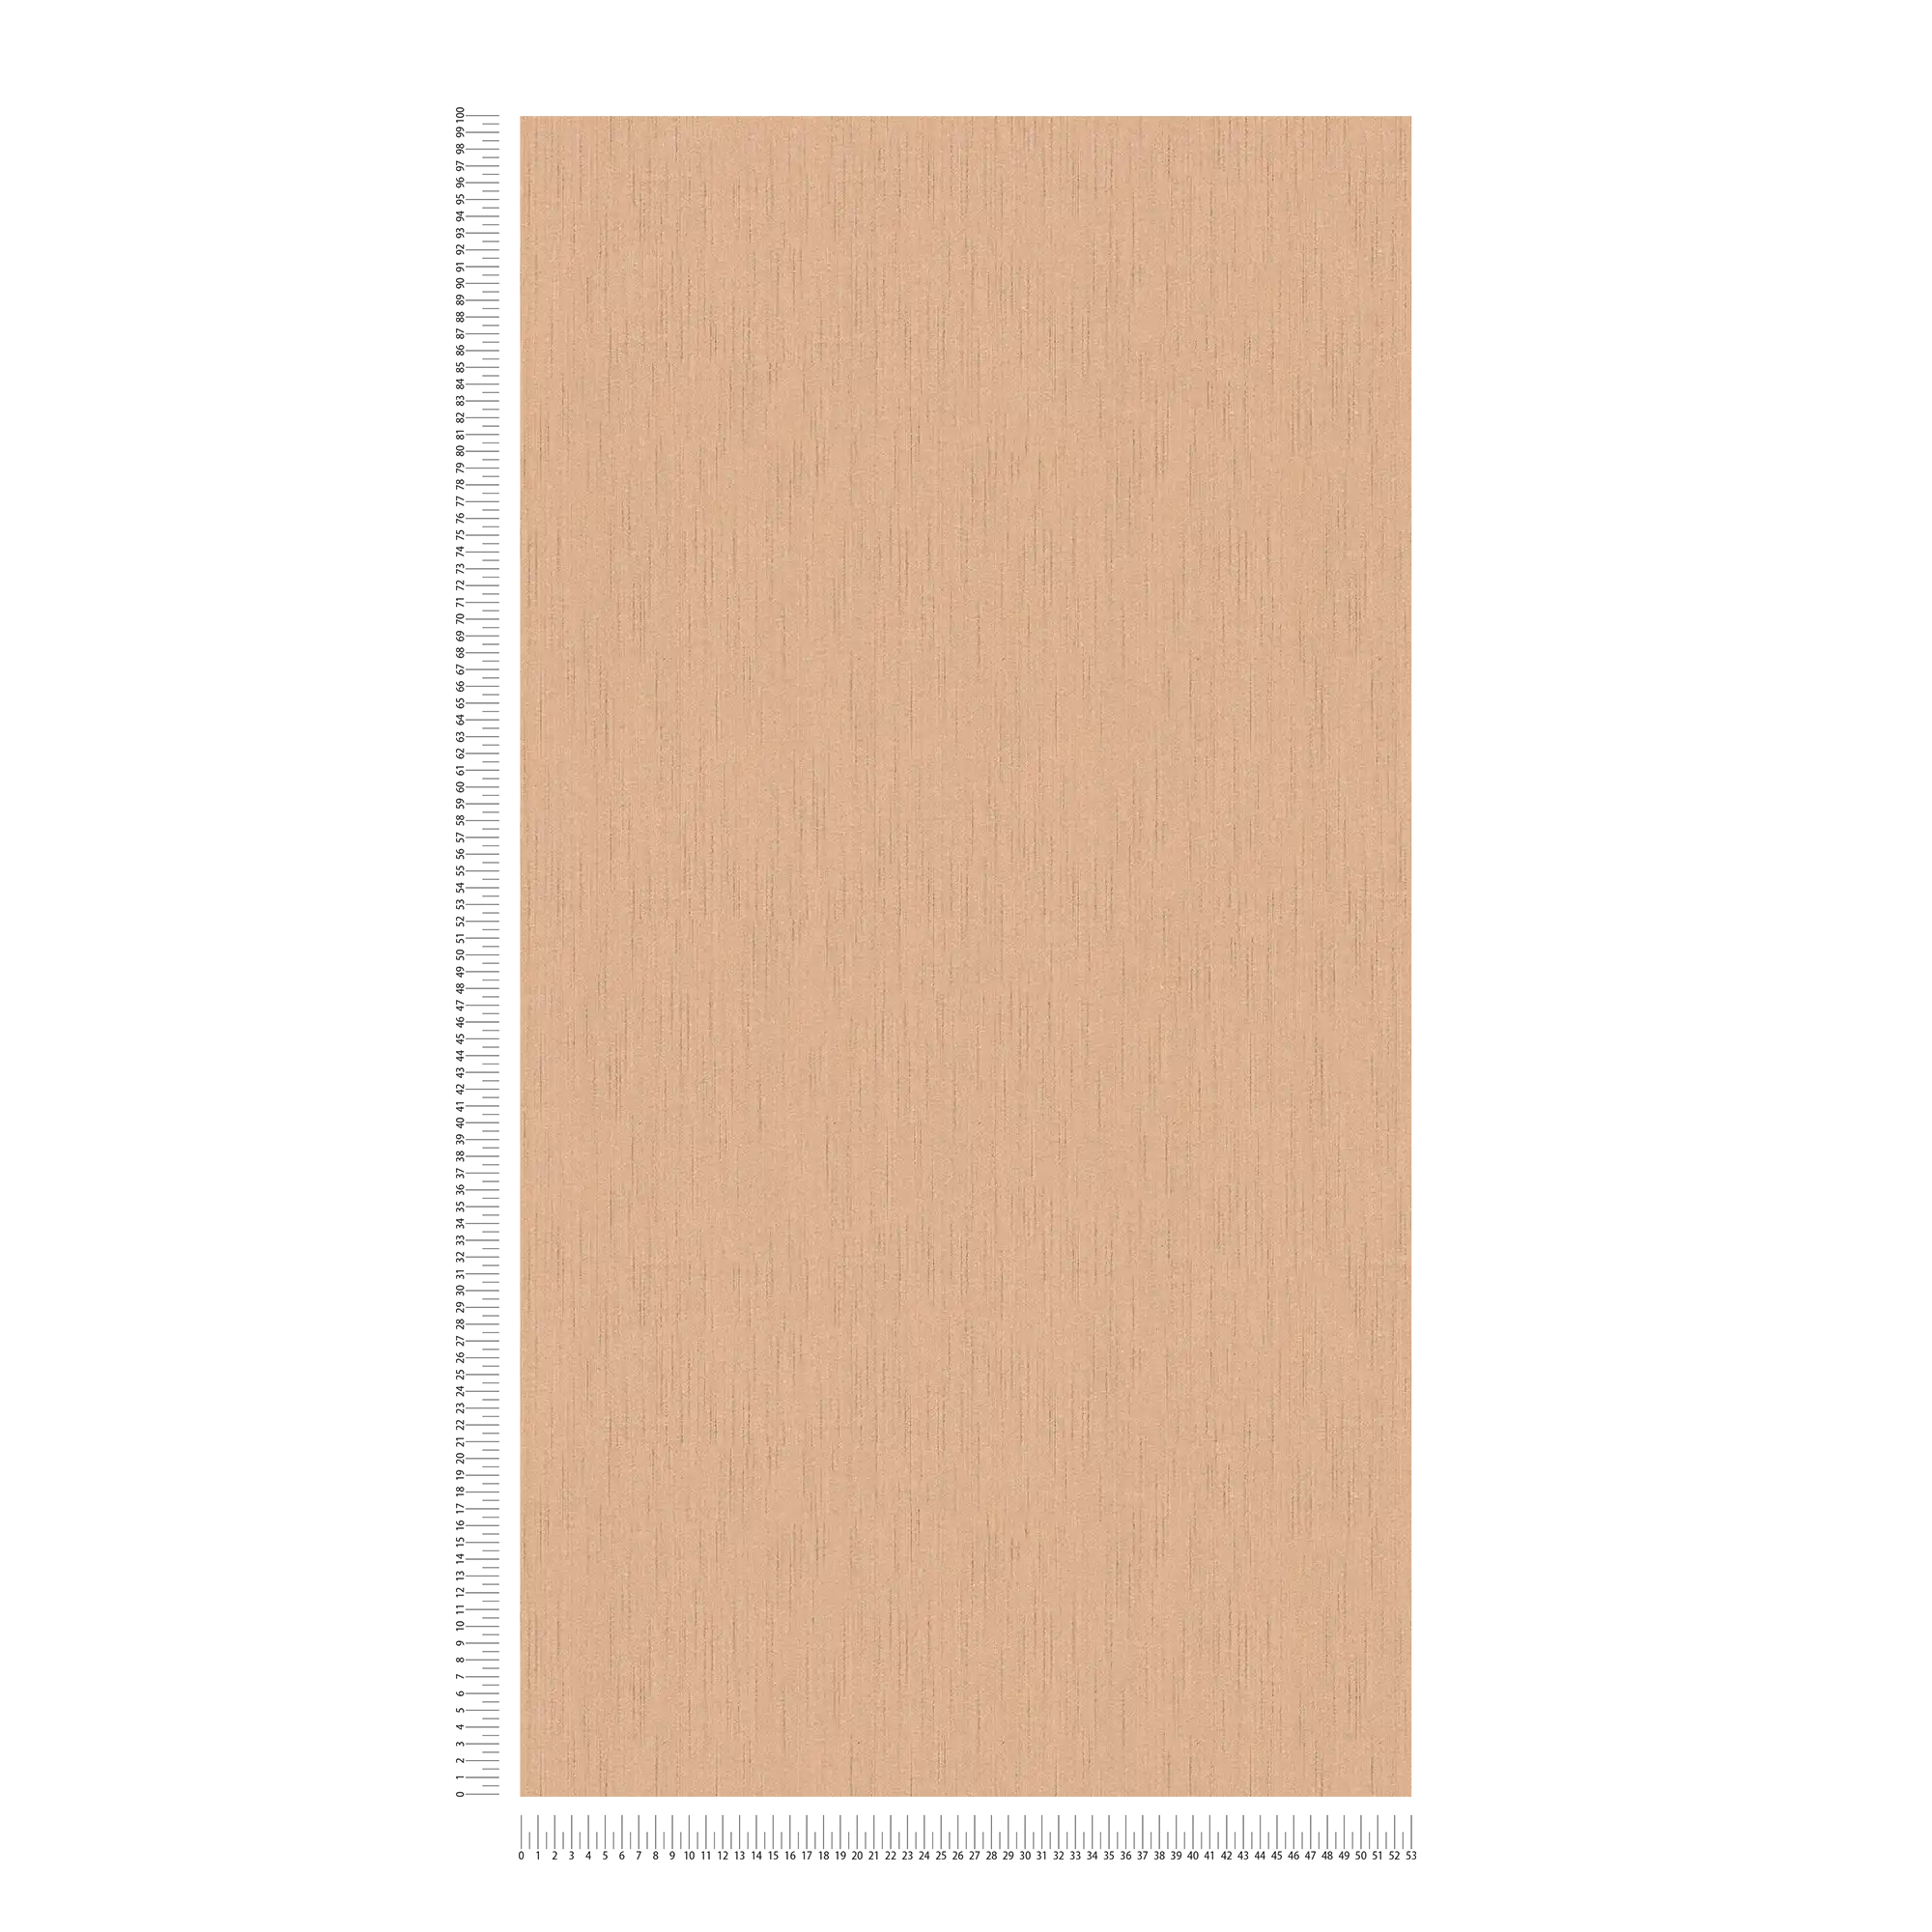             Carta da parati in tessuto non tessuto arancione terracotta con texture tessile screziata
        